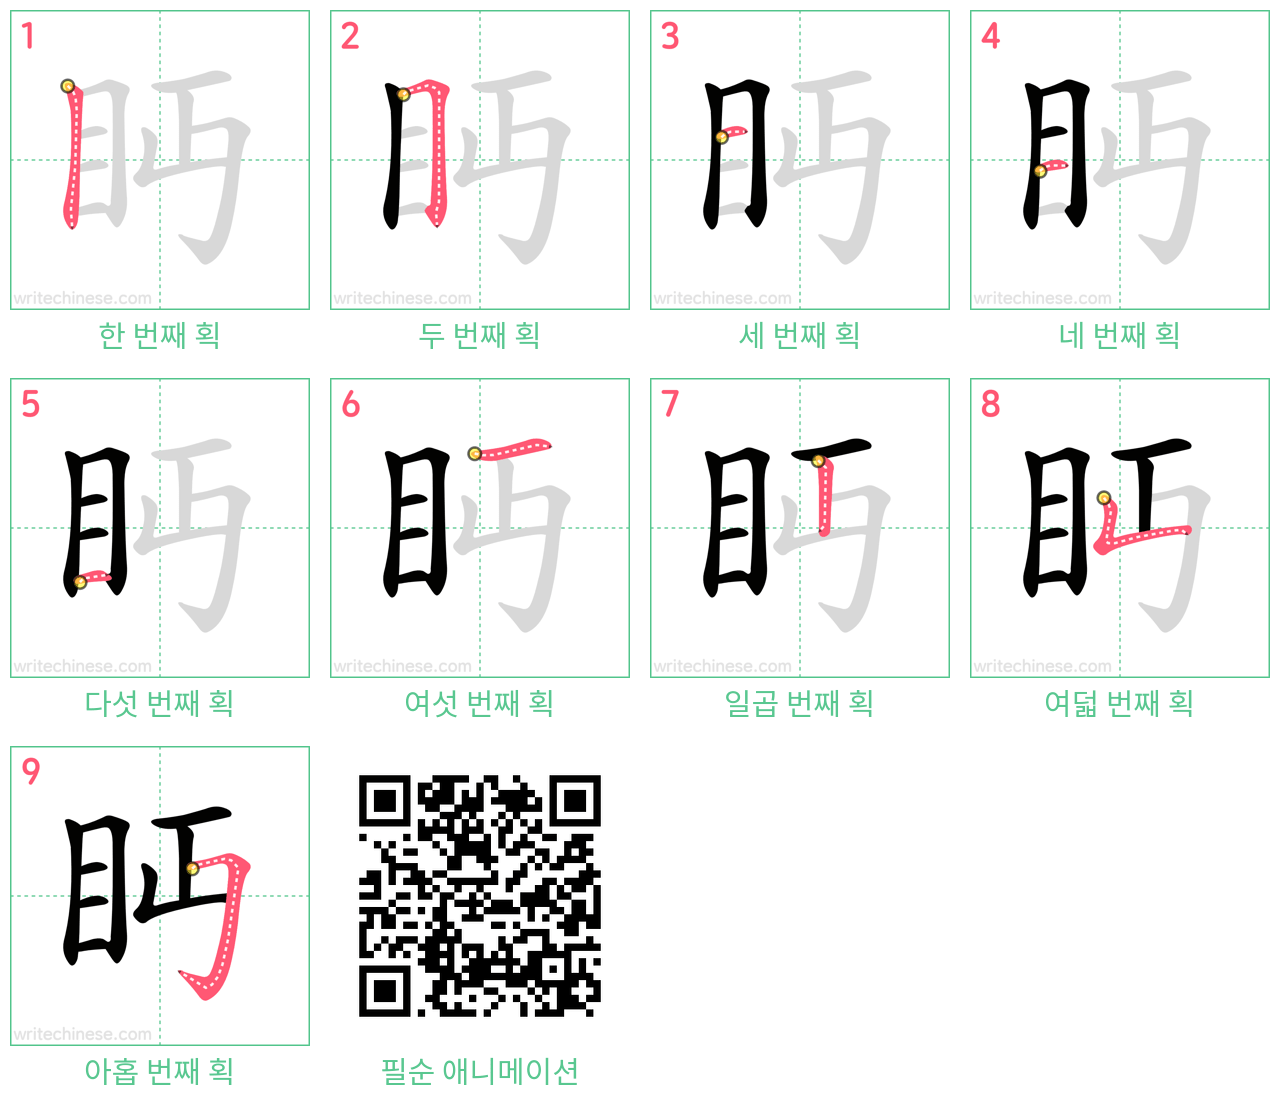 眄 step-by-step stroke order diagrams